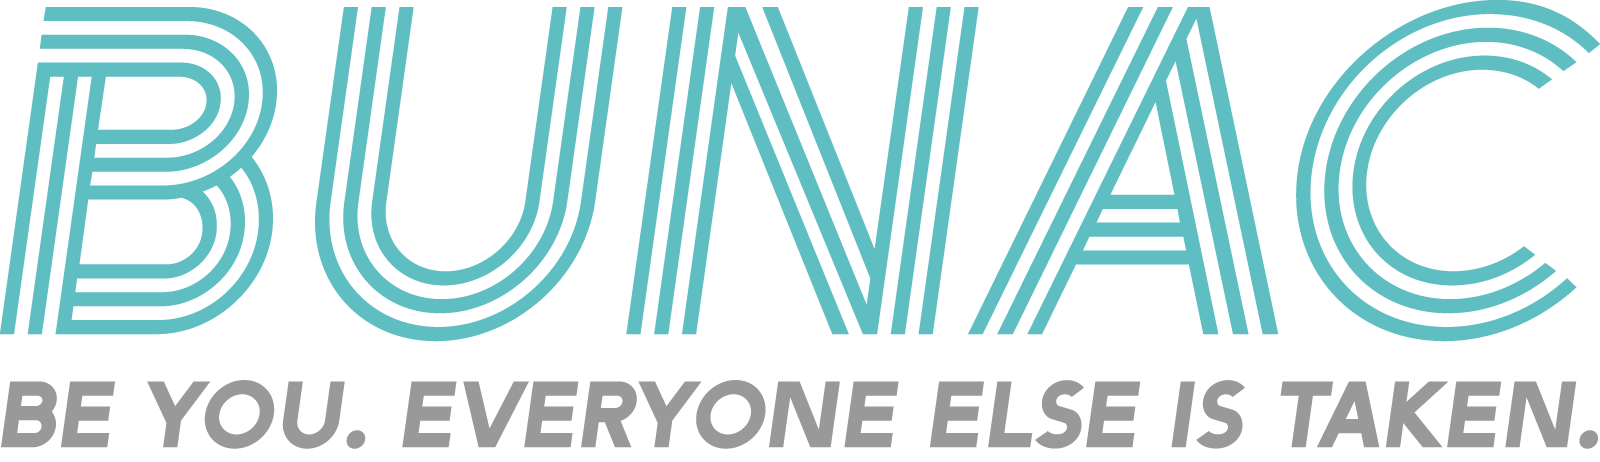 BUNAC logo